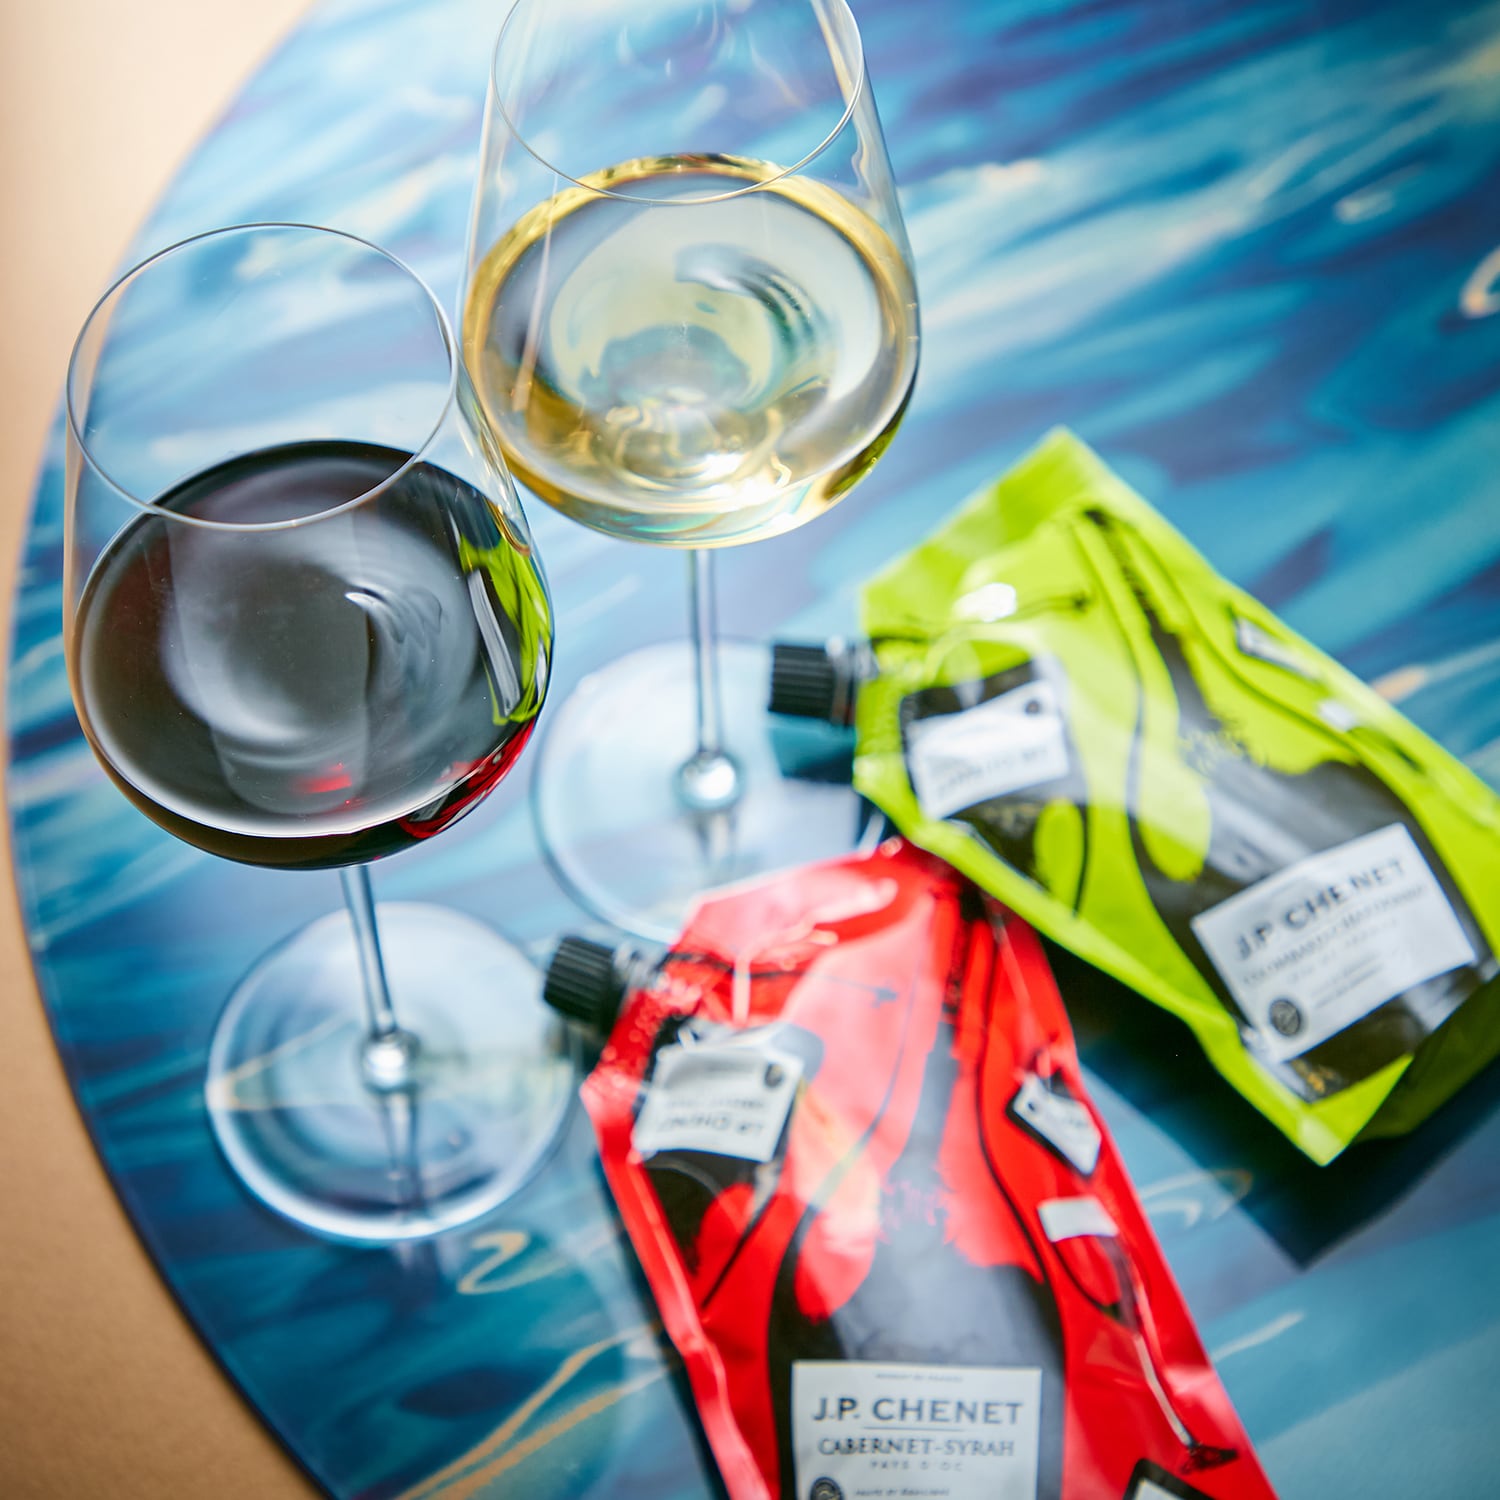 【J.P.Chenet】個包装で持ち運びやすい イージーパックワイン 9本画像